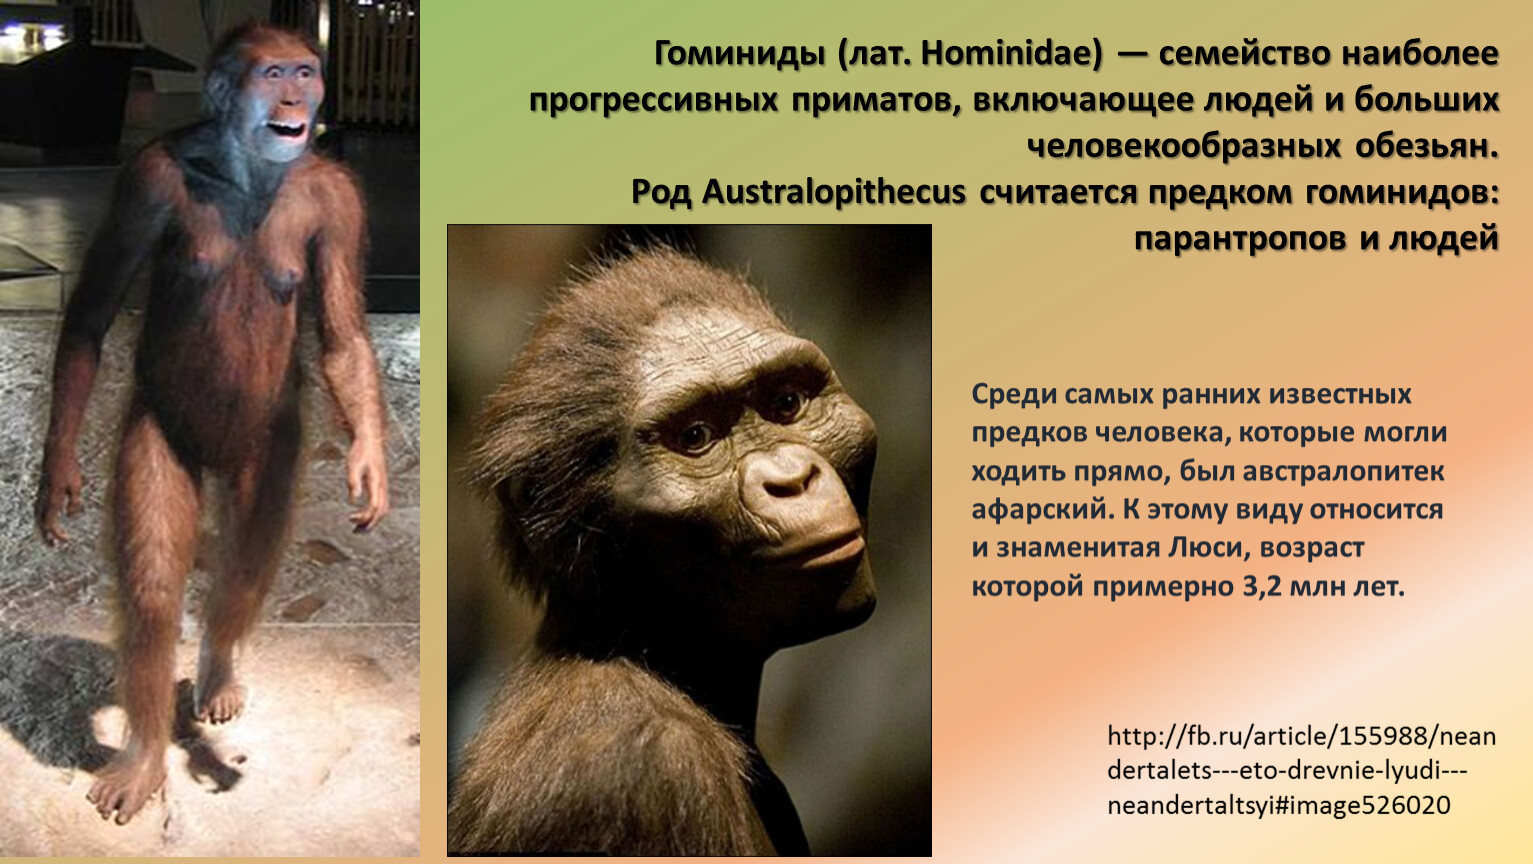 Образ жизни человекообразных обезьян. Понгиды и гоминиды. Семейство гоминиды. Приматы гоминиды. Представители приматов гоминиды.